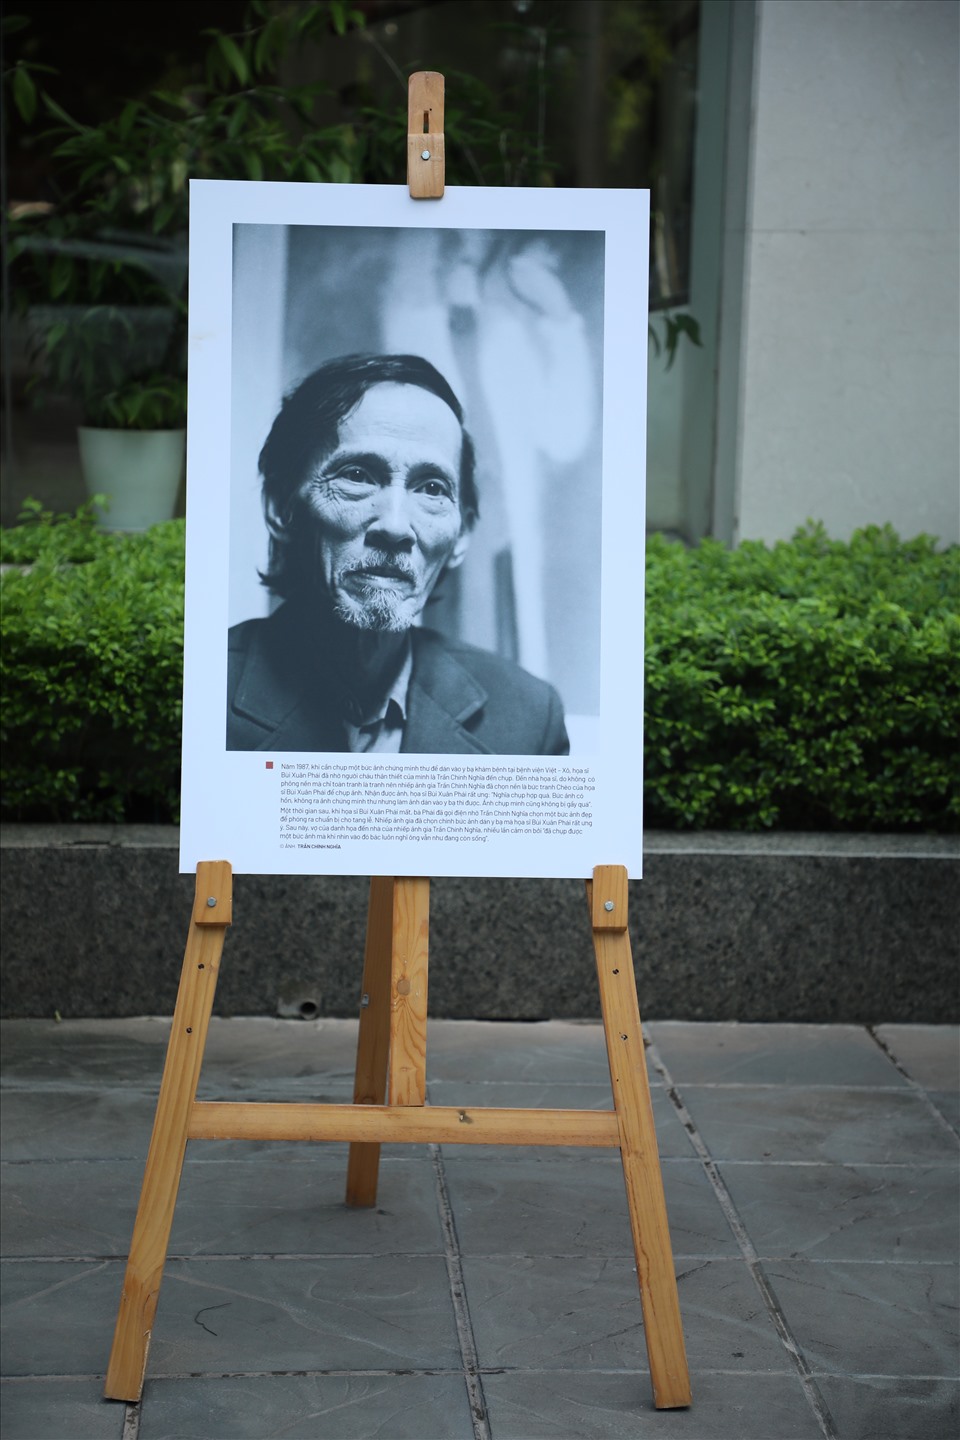 Nhiếp ảnh gia Trần Chính Nghĩa đã tuyển chọn 20 bức ảnh chân dung Bùi Xuân Phái trong kho ảnh của mình để giới thiệu và trưng bày trong khuôn khổ Lễ trao giải.